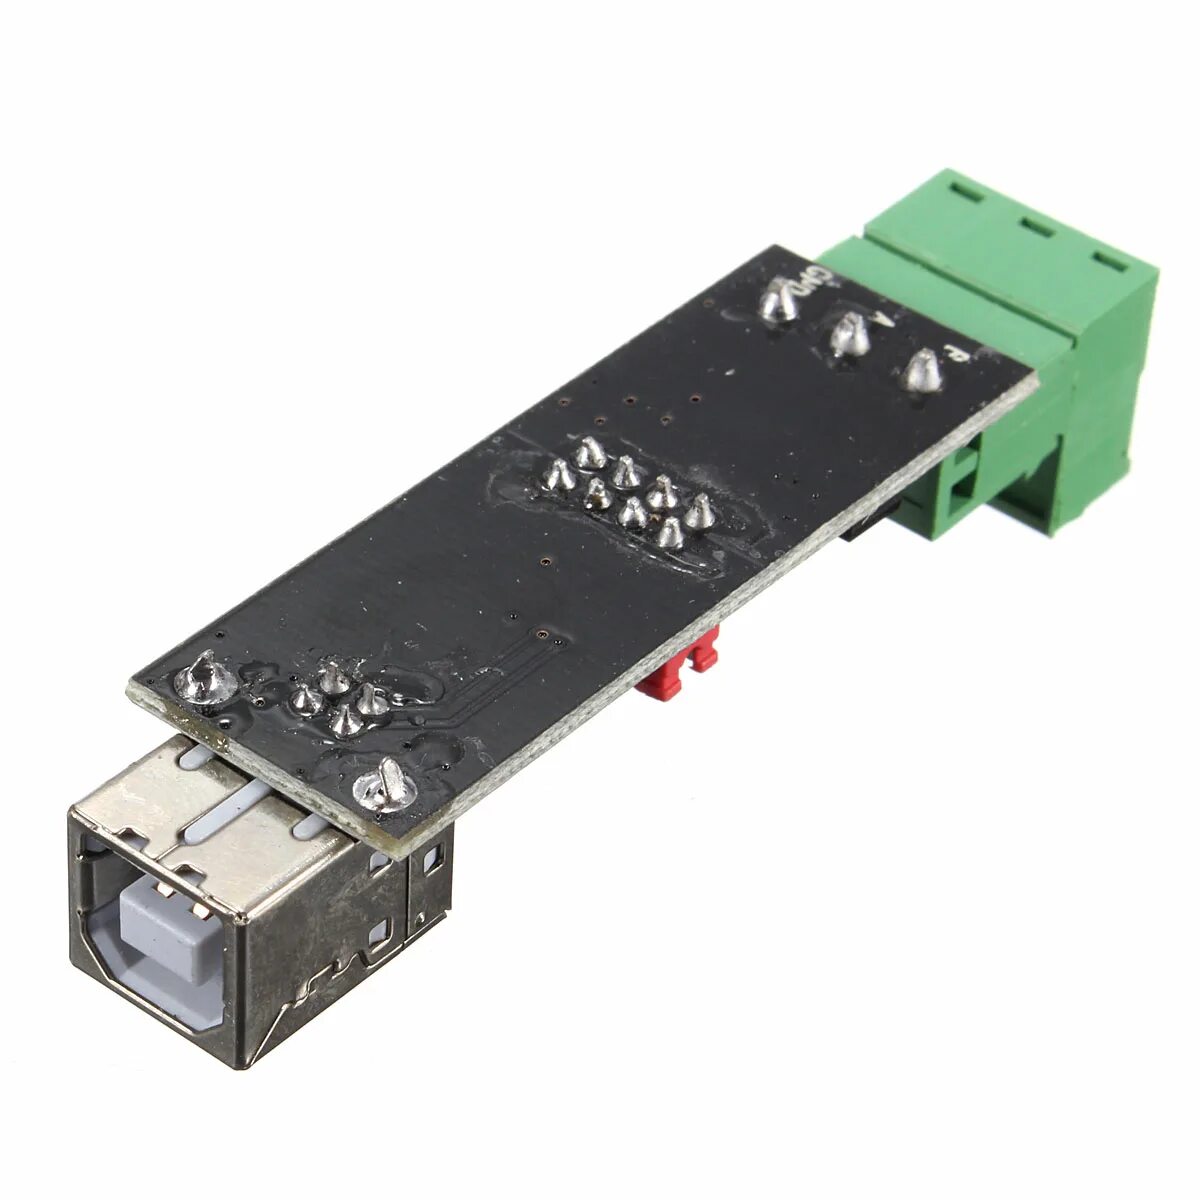 Usb 485 купить. Ft232 rs485. Переходник USB-rs485. USB на rs485 ft232. USB TTL 485 232.